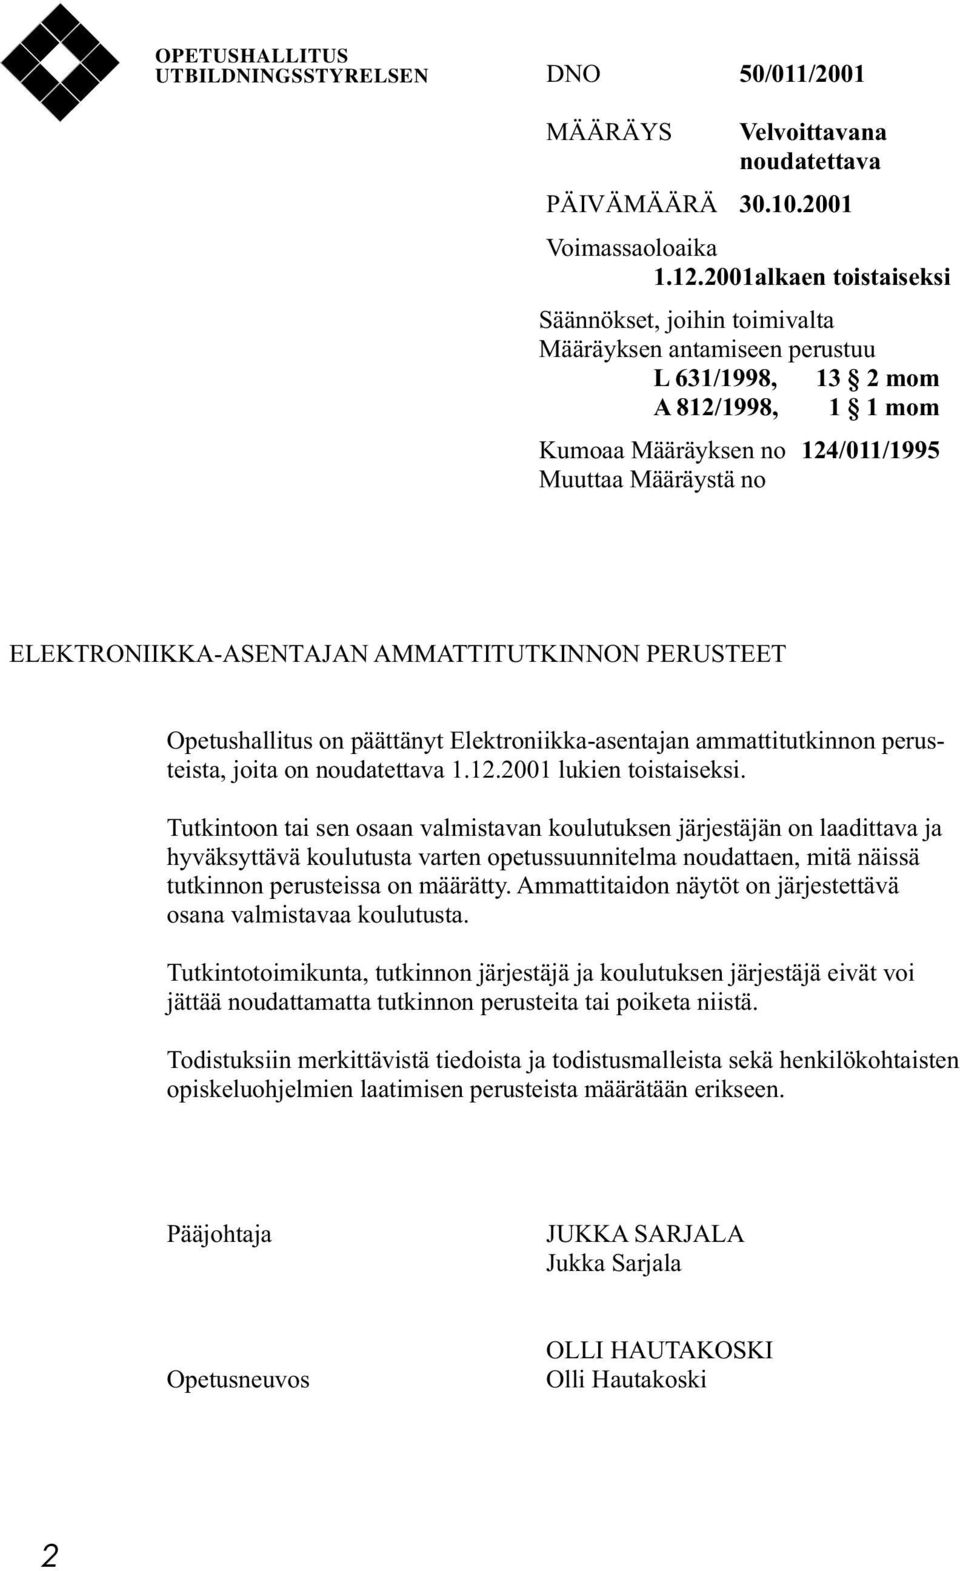 ELEKTRONIIKKA-ASENTAJAN AMMATTITUTKINNON PERUSTEET Opetushallitus on päättänyt Elektroniikka-asentajan ammattitutkinnon perusteista, joita on noudatettava 1.12.2001 lukien toistaiseksi.